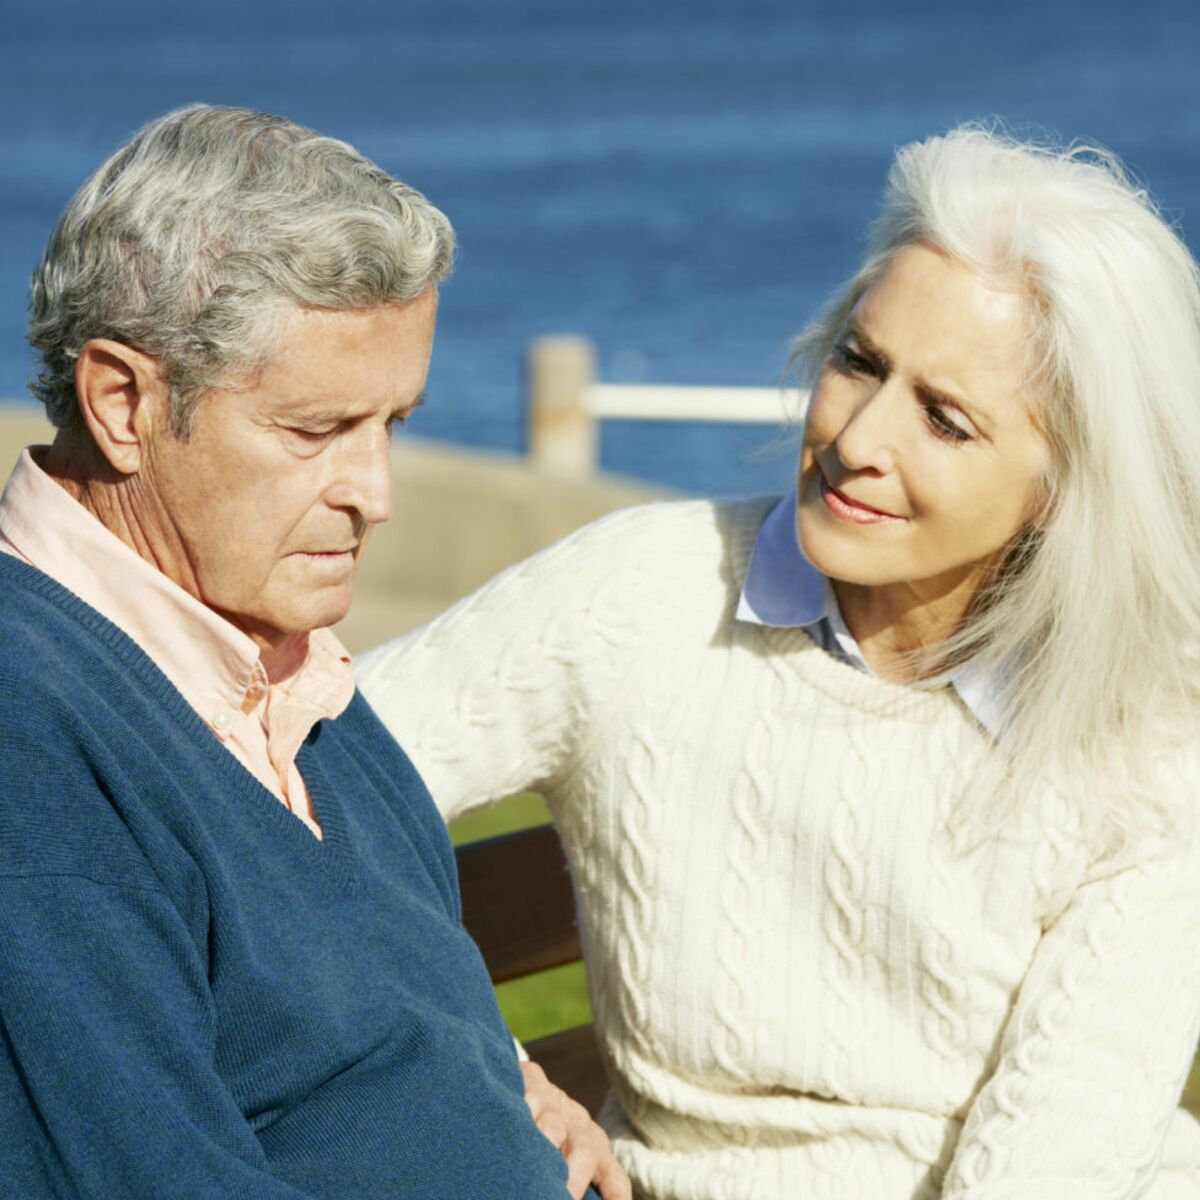 Maladie d'Alzheimer : tout savoir sur cette maladie dégénérative